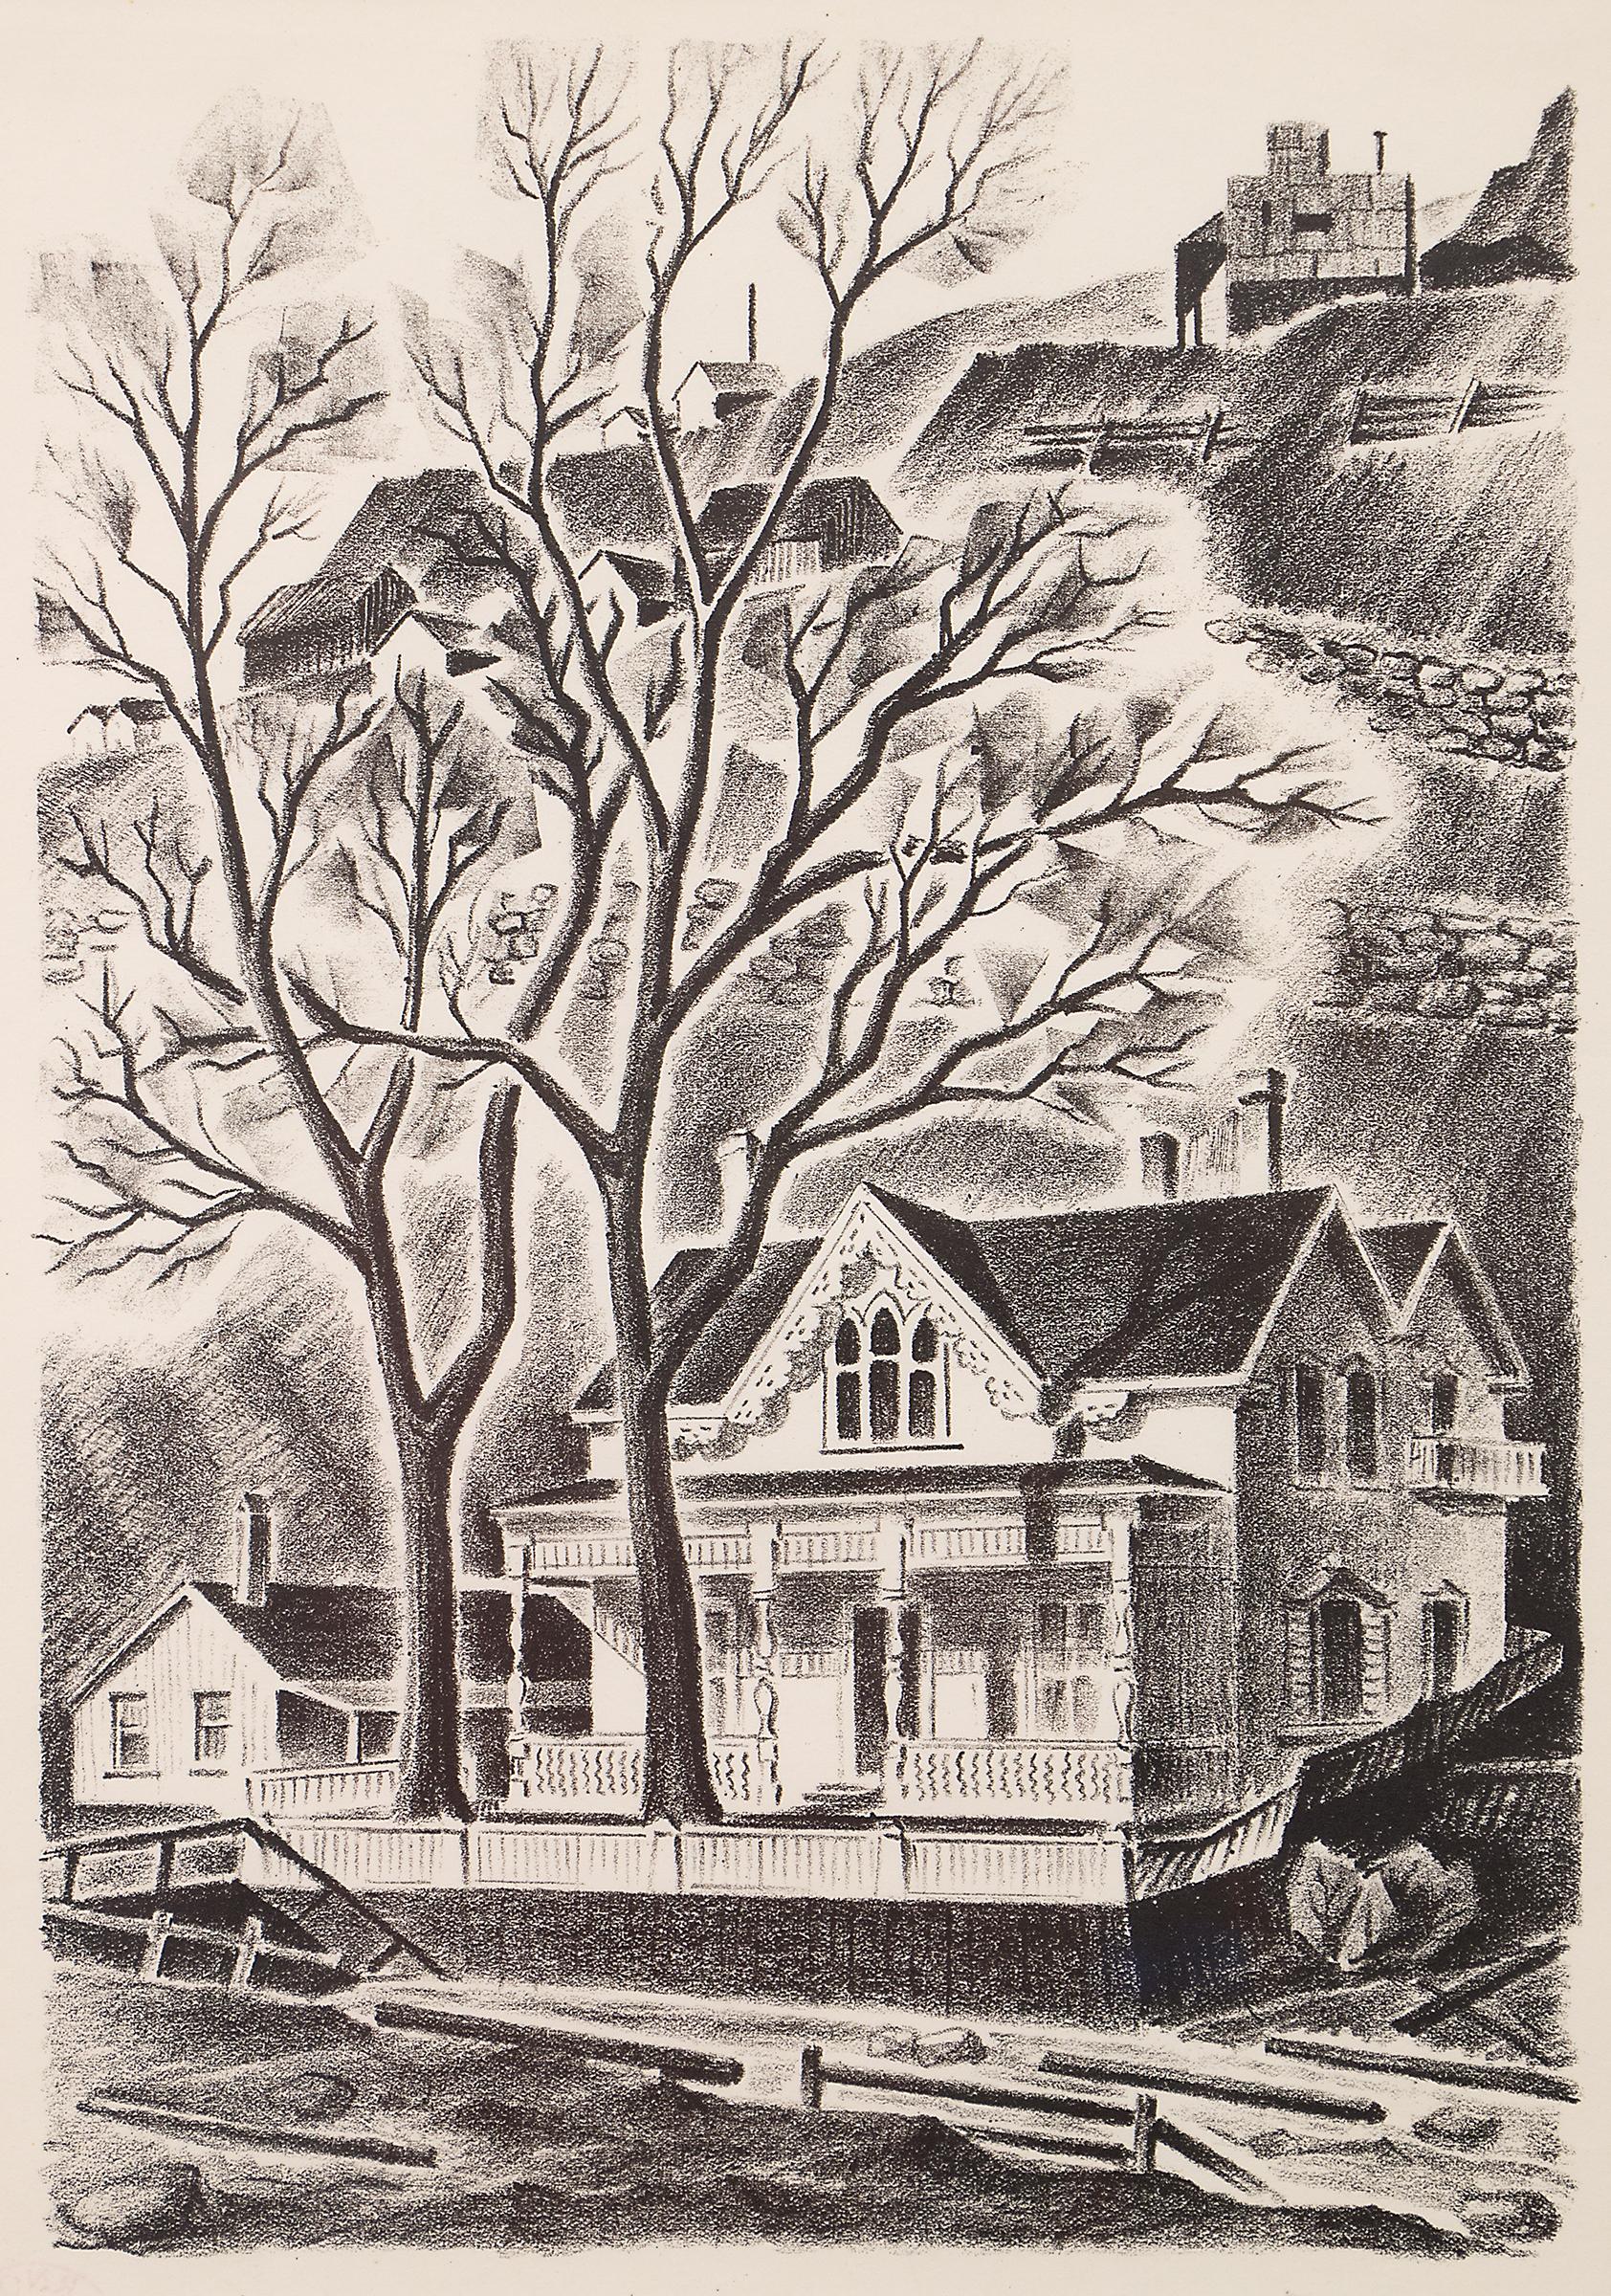 House at Gregory Point (Colorado), lithographie de paysage en noir et blanc des années 1930  - Print de Arnold Ronnebeck